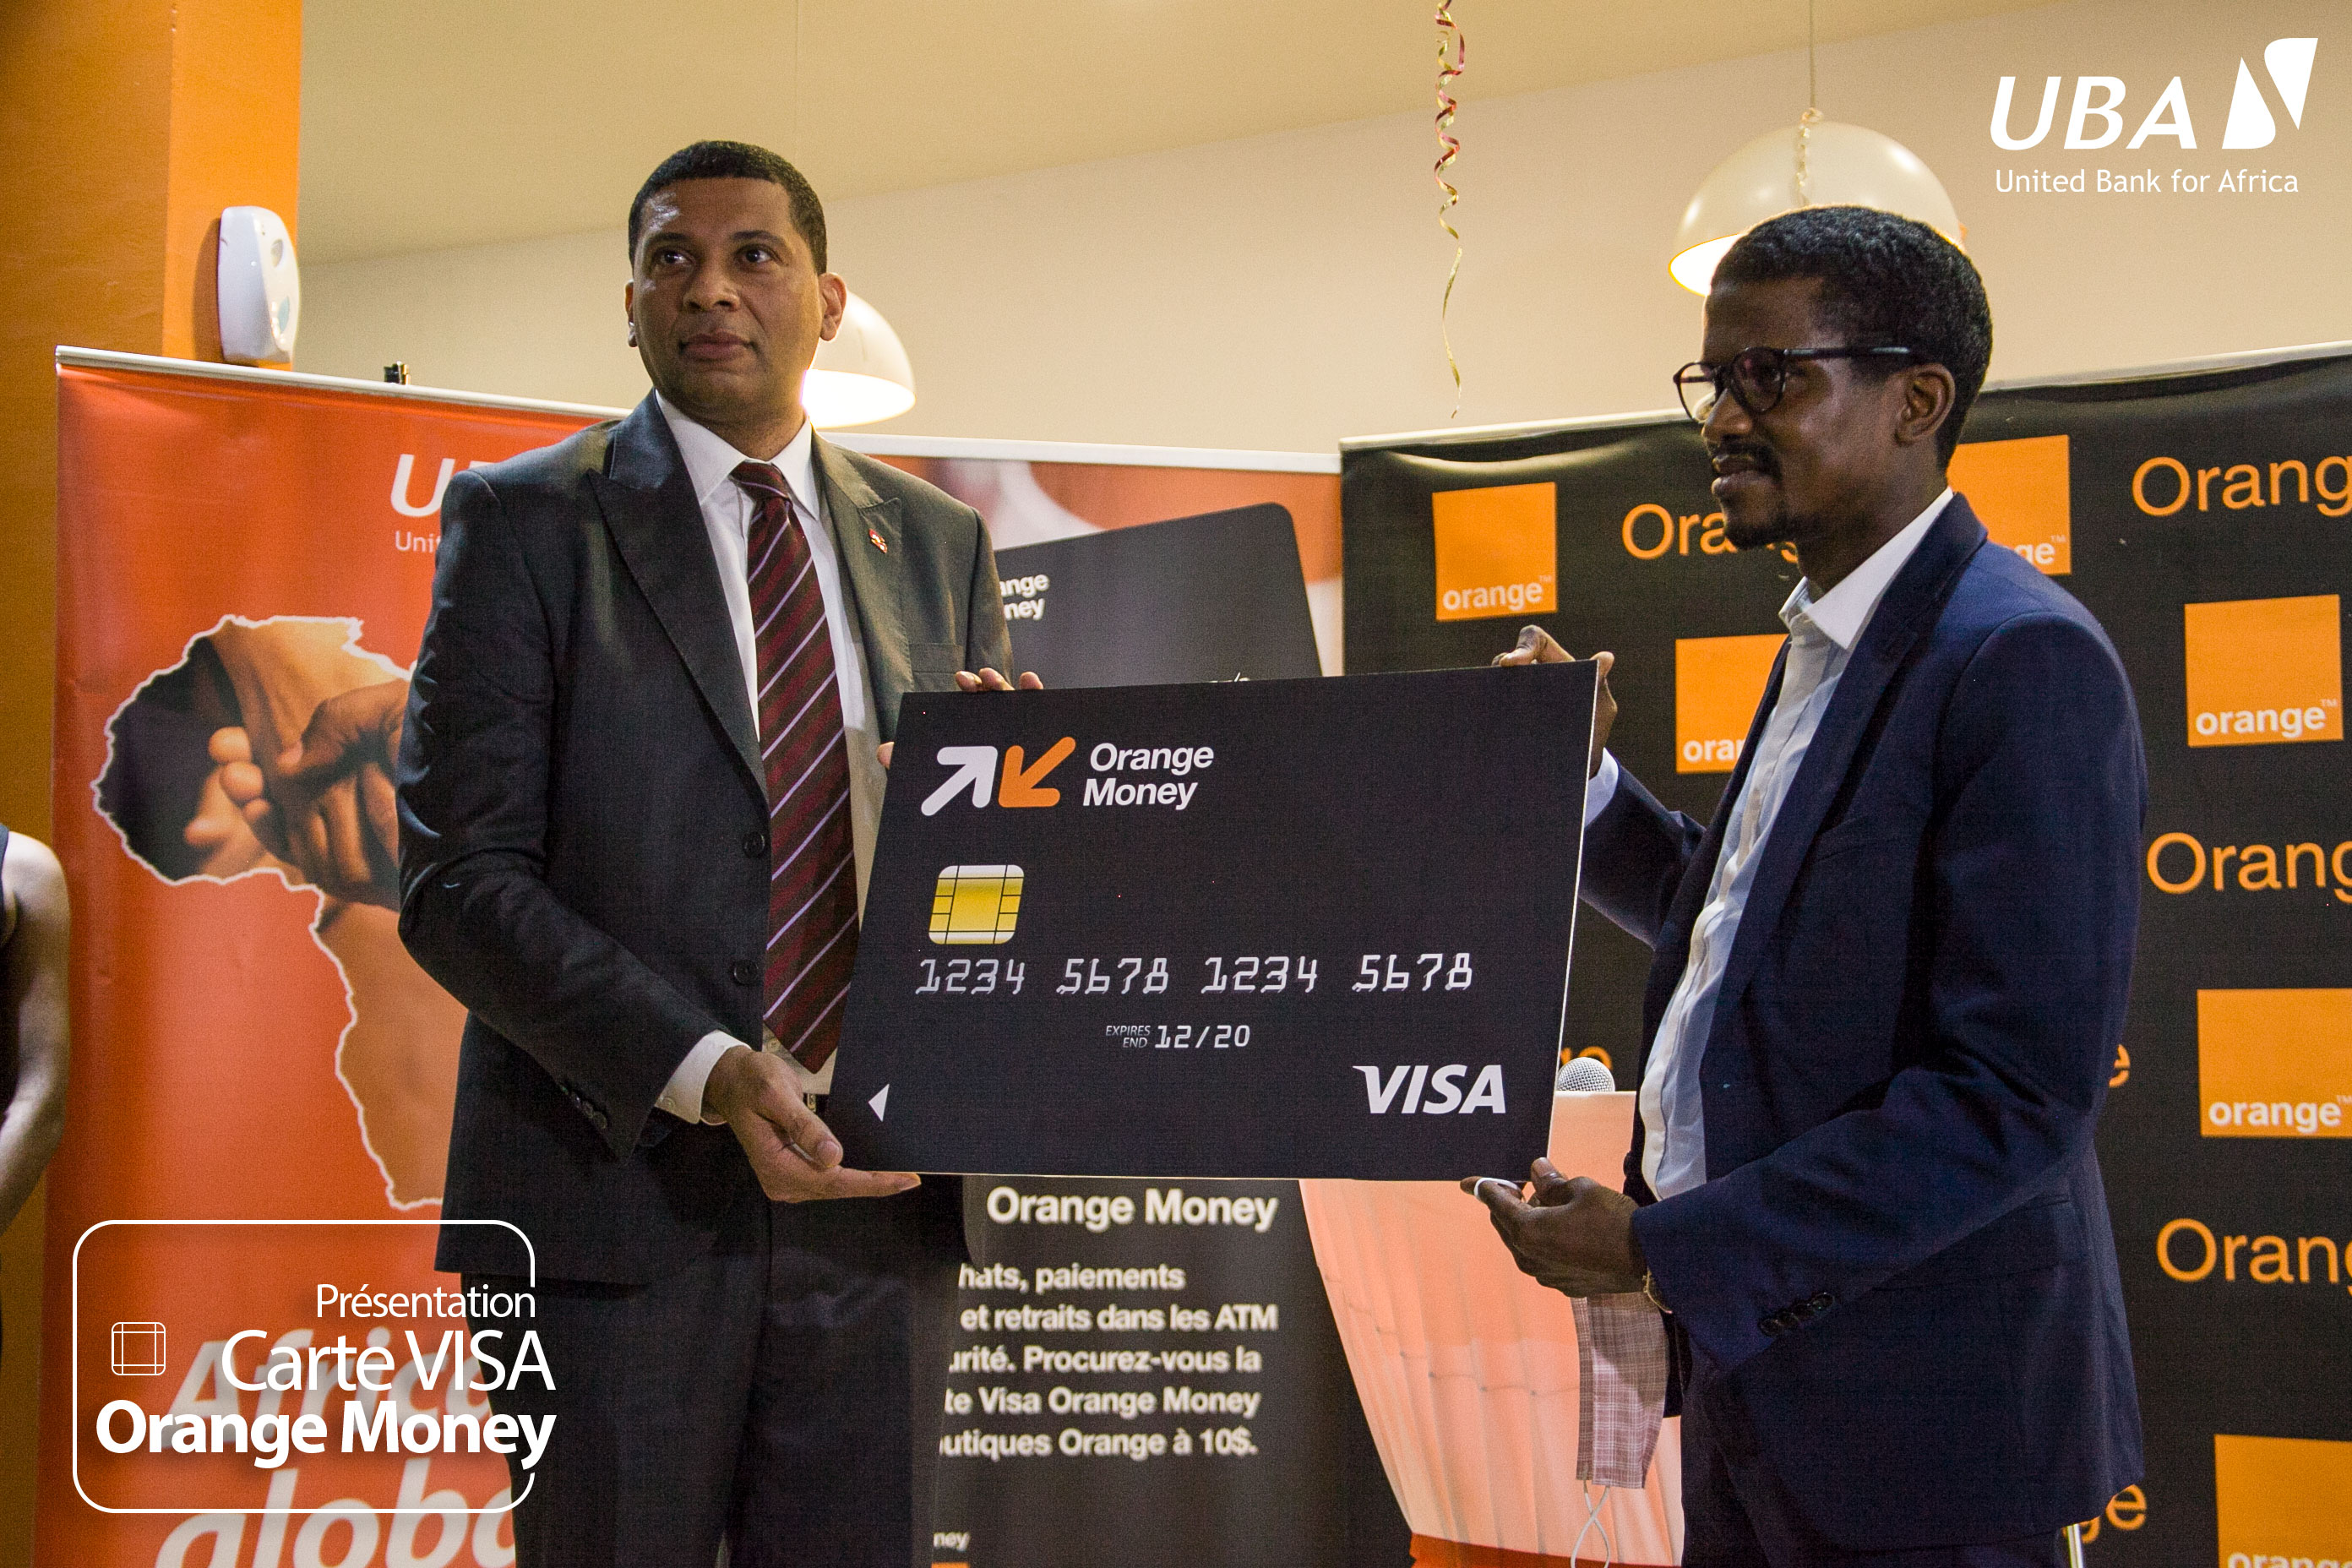 La carte visa Orange Money délivrée par UBA, met à jour la qualité de la relation et le degré de collaboration de nos deux institutions en réalisant une première en RDC : connecter le mobile money au système bancaire par un moyen de paiement électronique de stature mondiale.